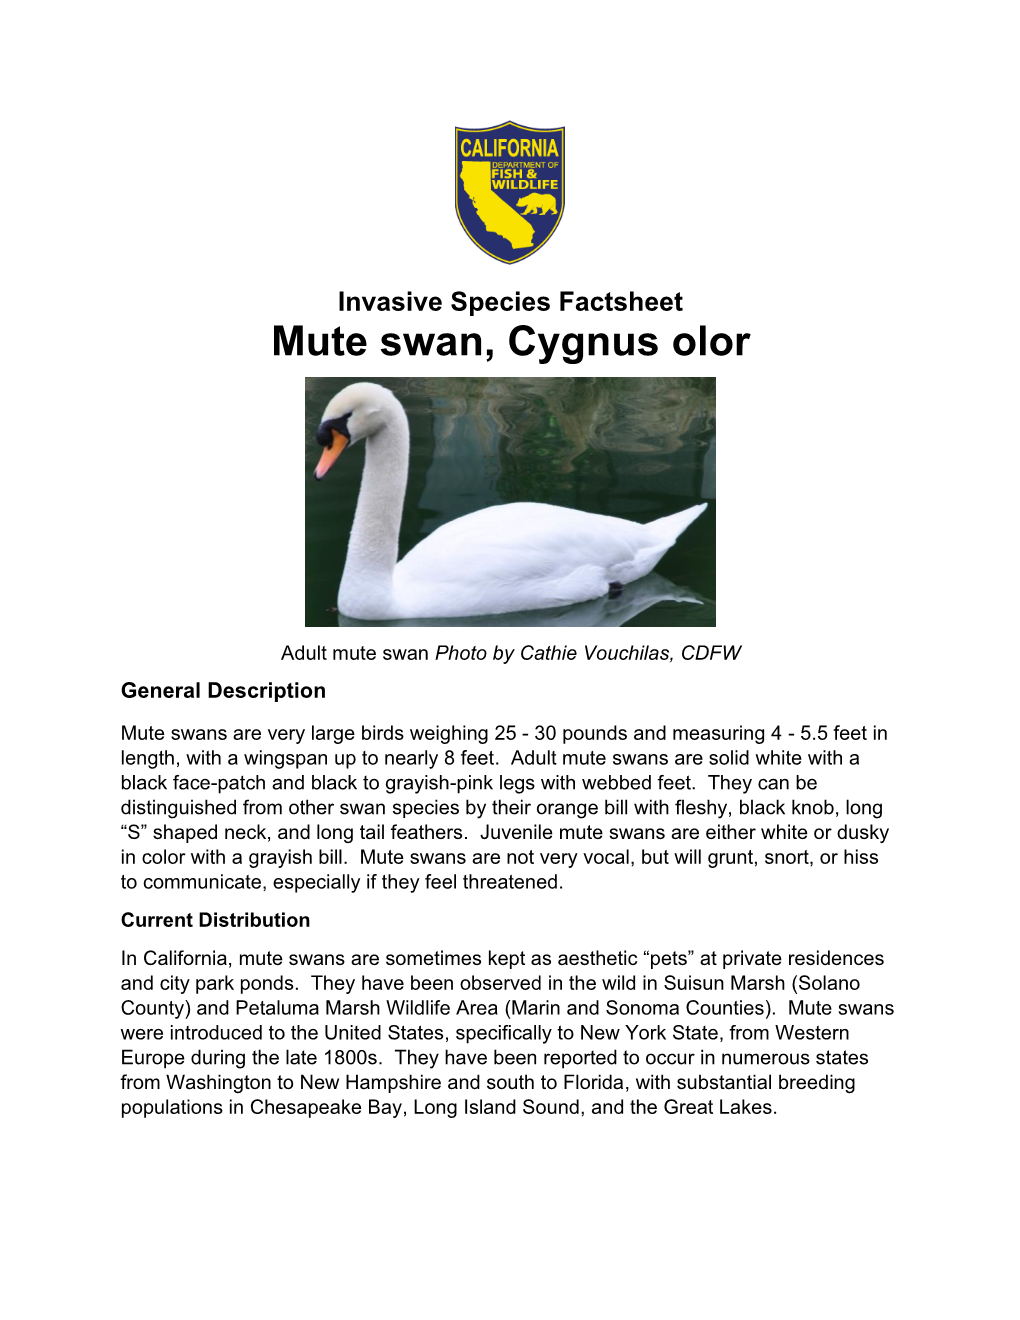 Invasive Species Factsheet: Mute Swan, Cygnus Olor